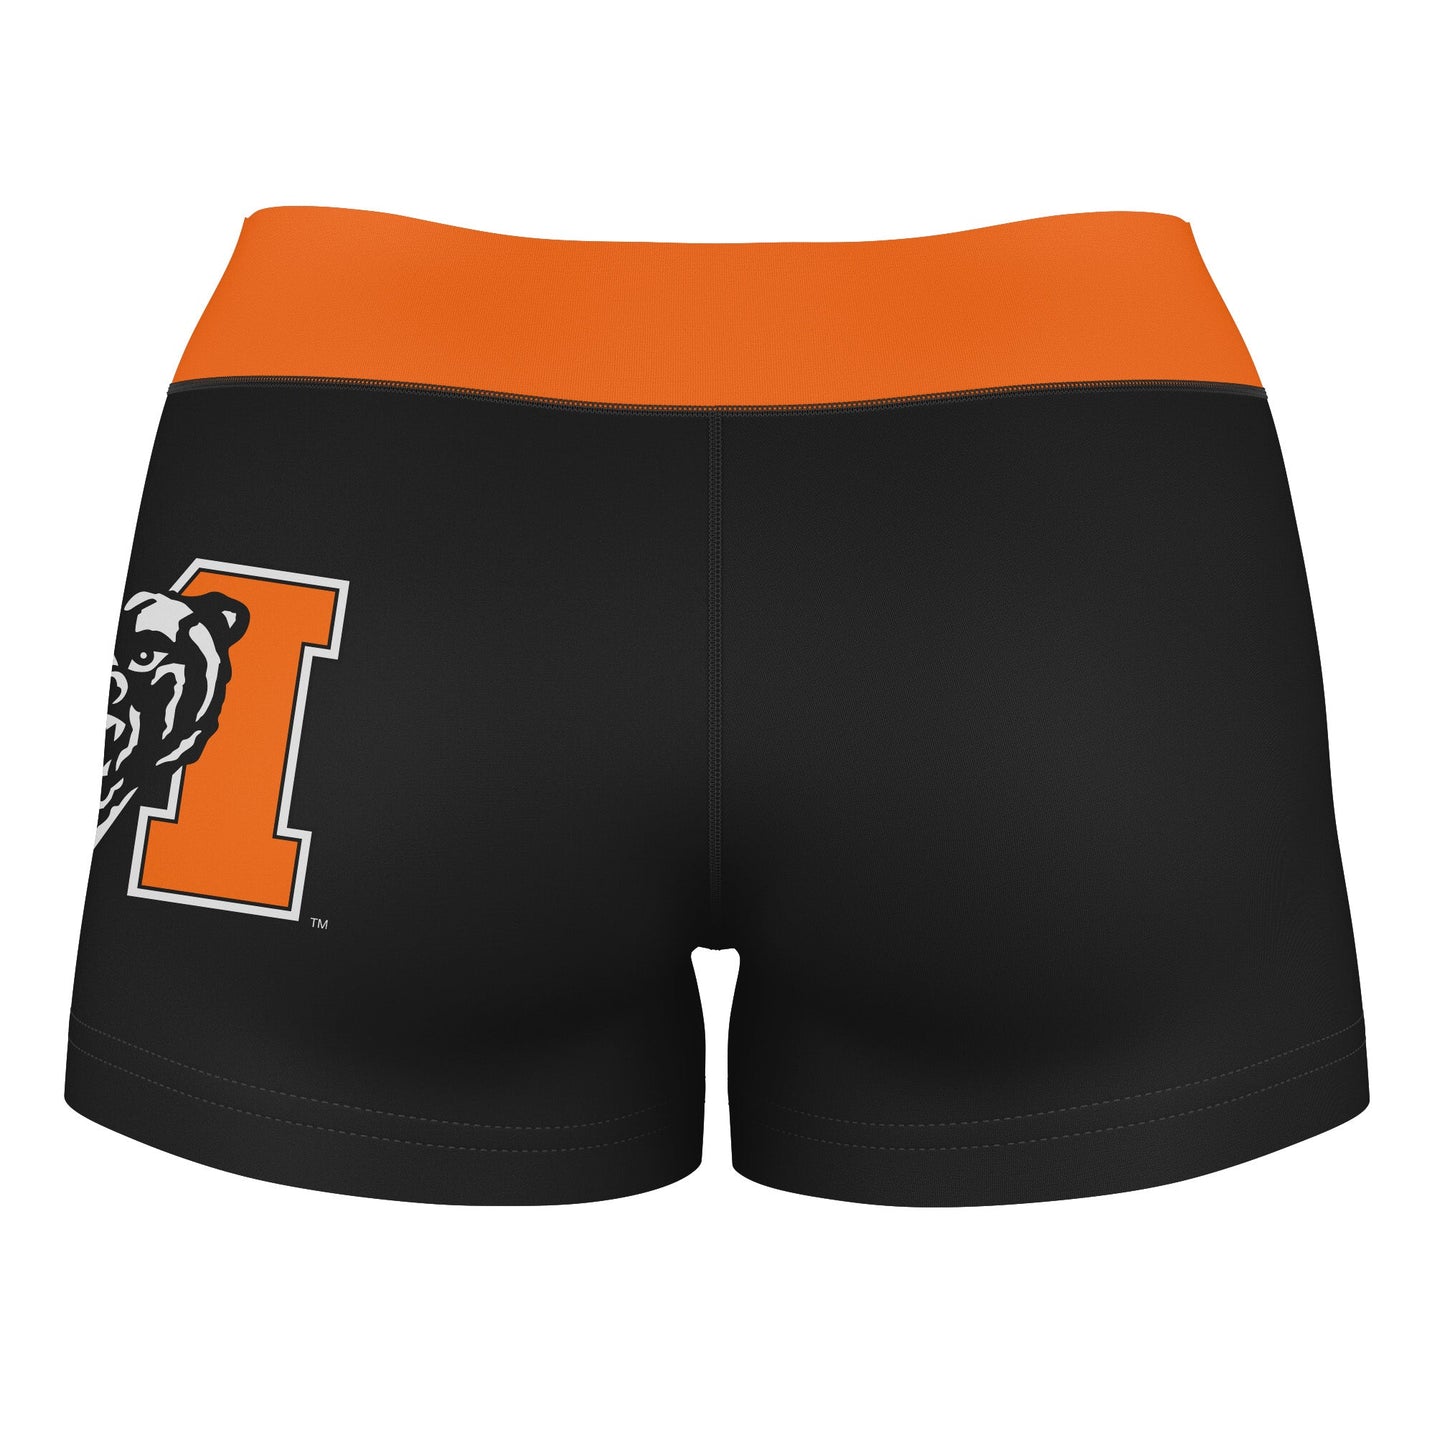 Mercer Bears MU Vive La Fete Logo on Thigh & Waistband Black & Orange Women Yoga Booty Workout Shorts 3.75 Inseam" - Vive La F̻te - Online Apparel Store